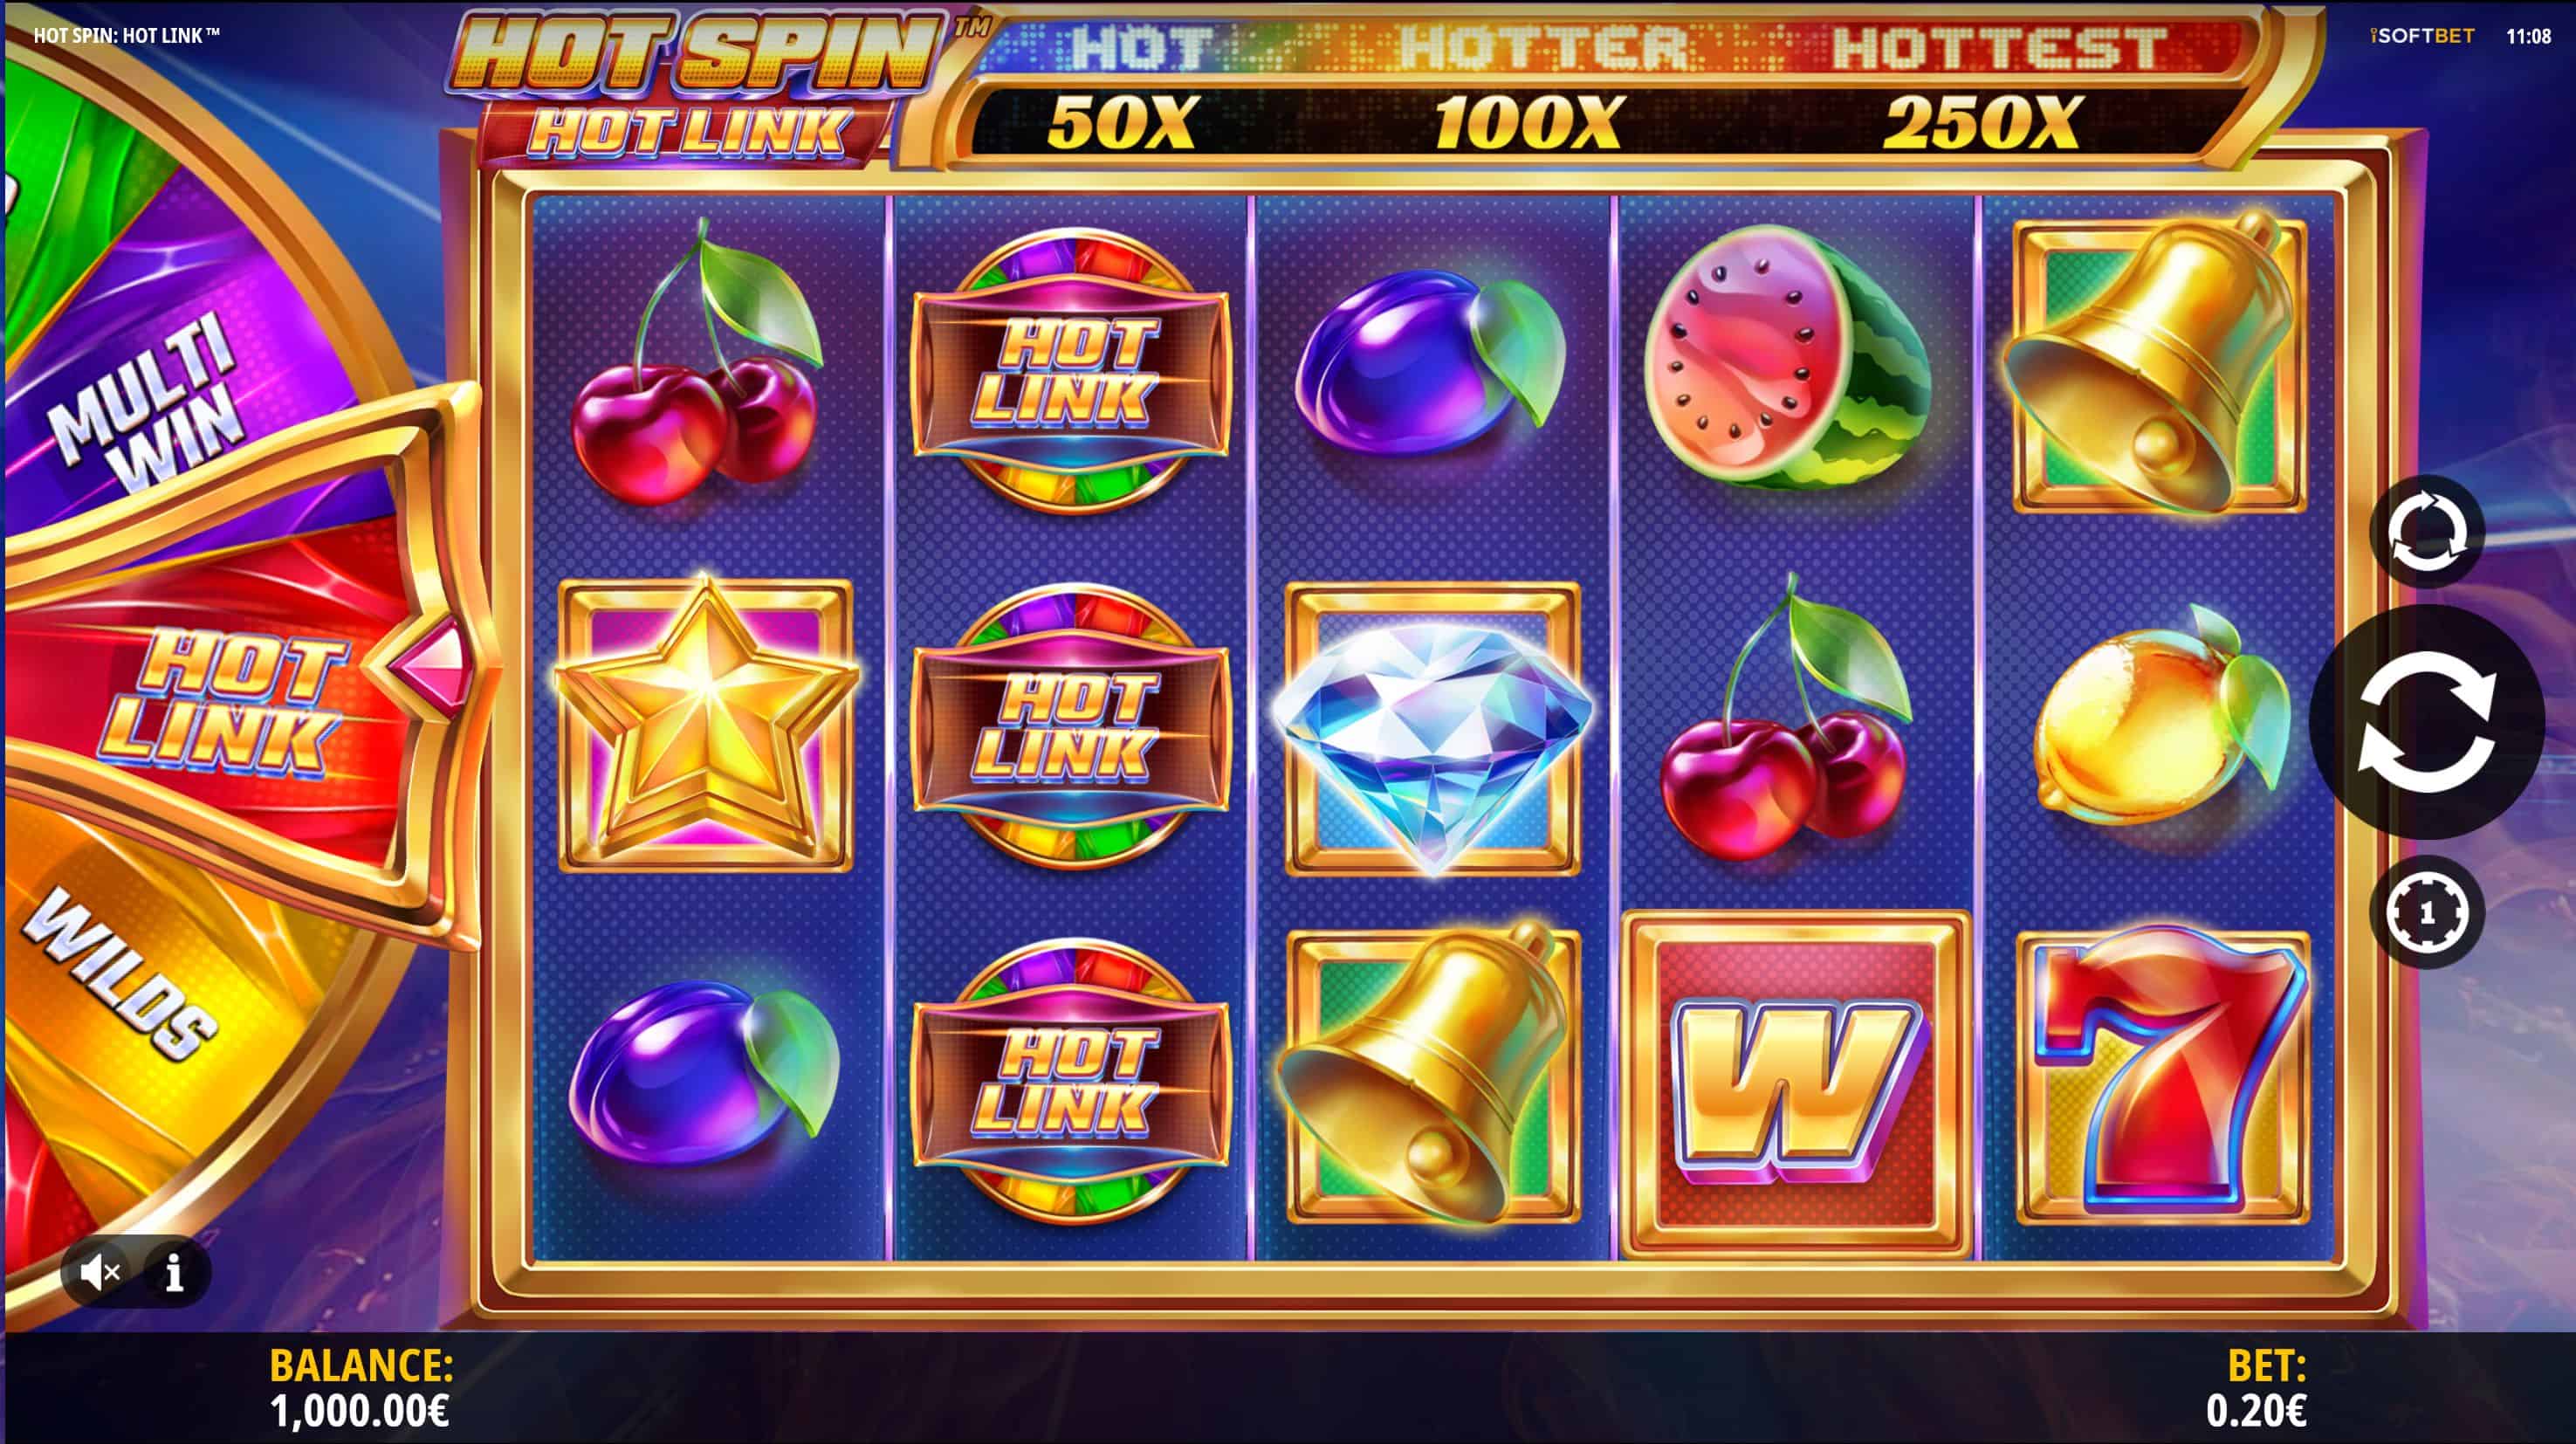 Hot Spin Hot Link Slot Game Free Play at Casino Ireland 01